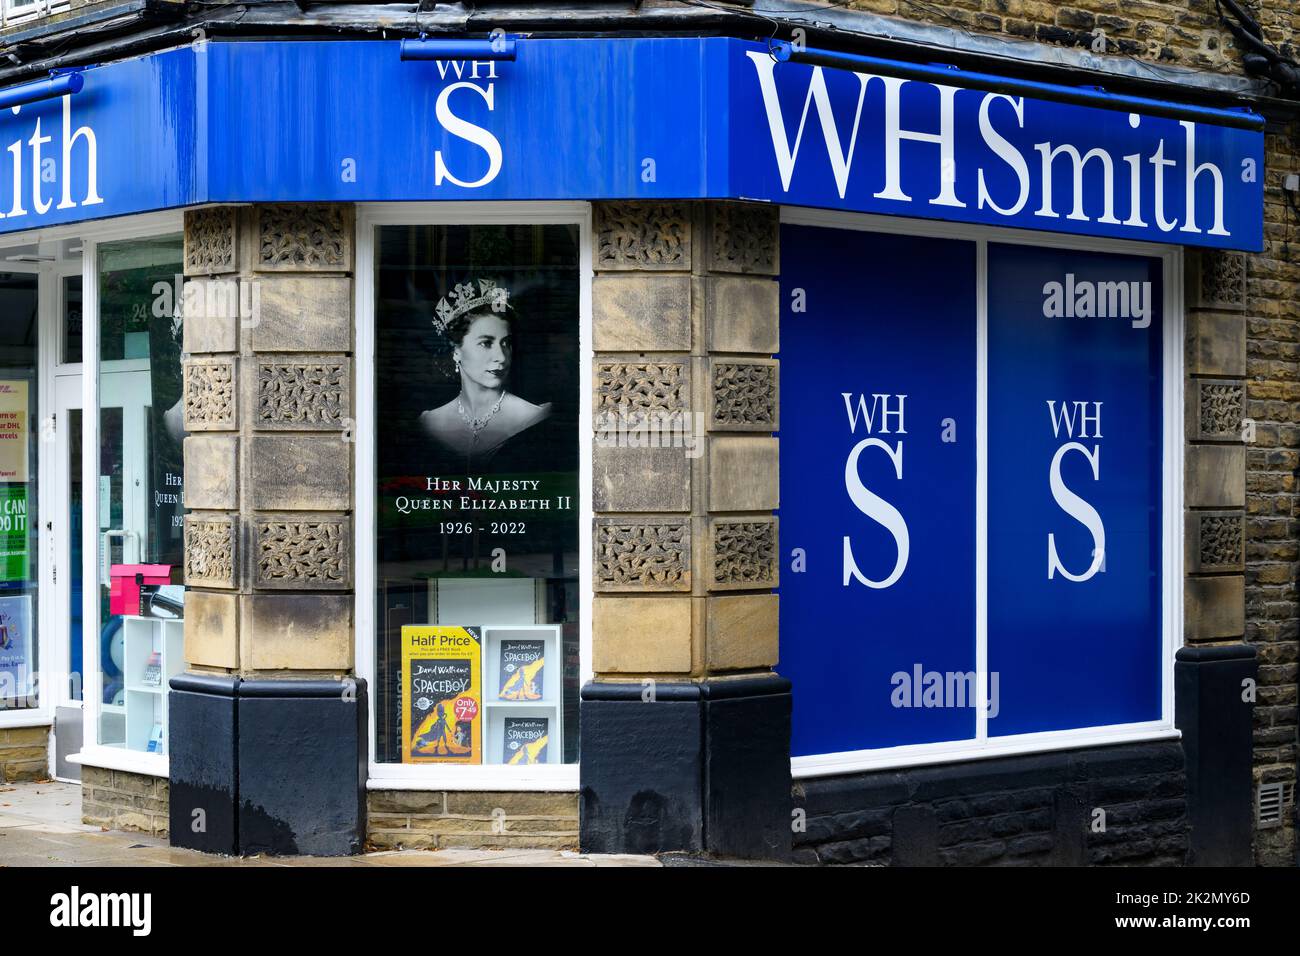 La morte della regina (poignant emotivo tributo alla facciata del negozio, poster che ricorda di rendere omaggio a Elisabetta 2) - W H Smith, Ilkley, Inghilterra, Regno Unito. Foto Stock